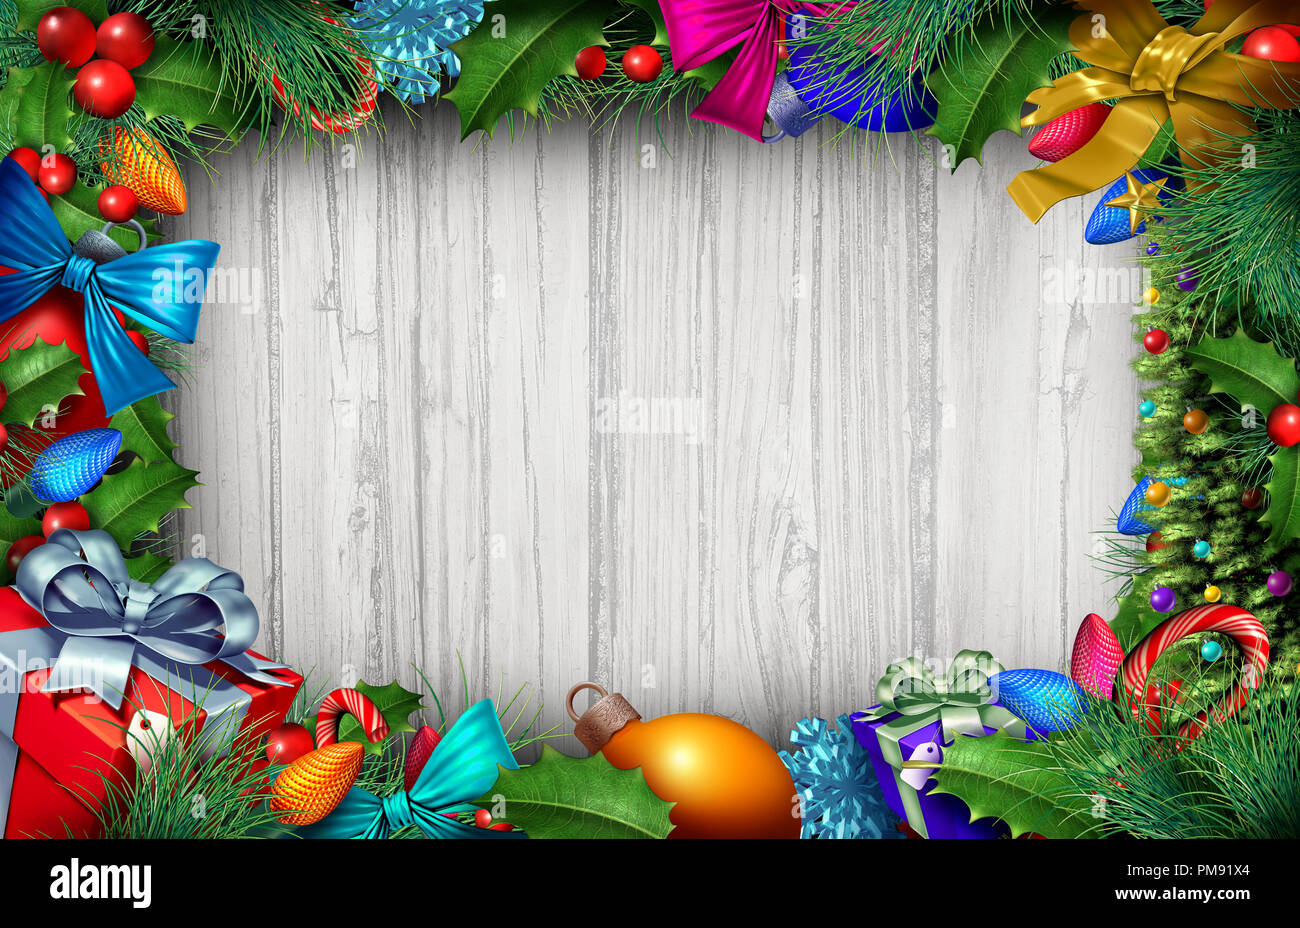 Navidad de fondo de madera y decoración de vacaciones de invierno con copia espacio 3D Área de texto con elementos de ilustración. Foto de stock